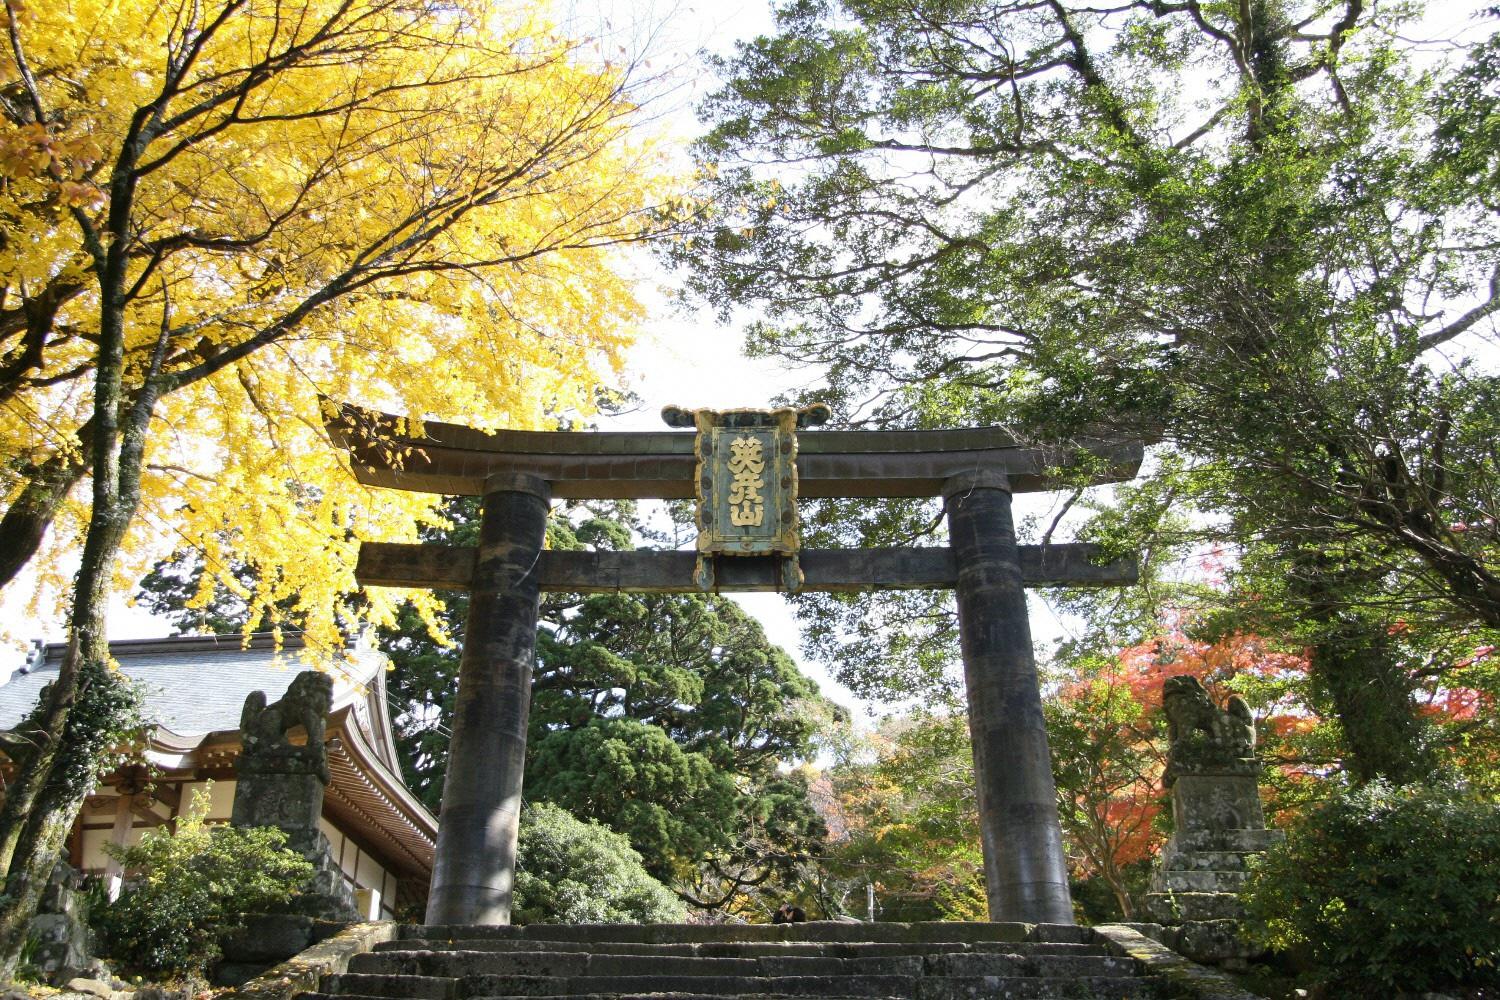 Hikosan Jingu - Copper Torii Gate